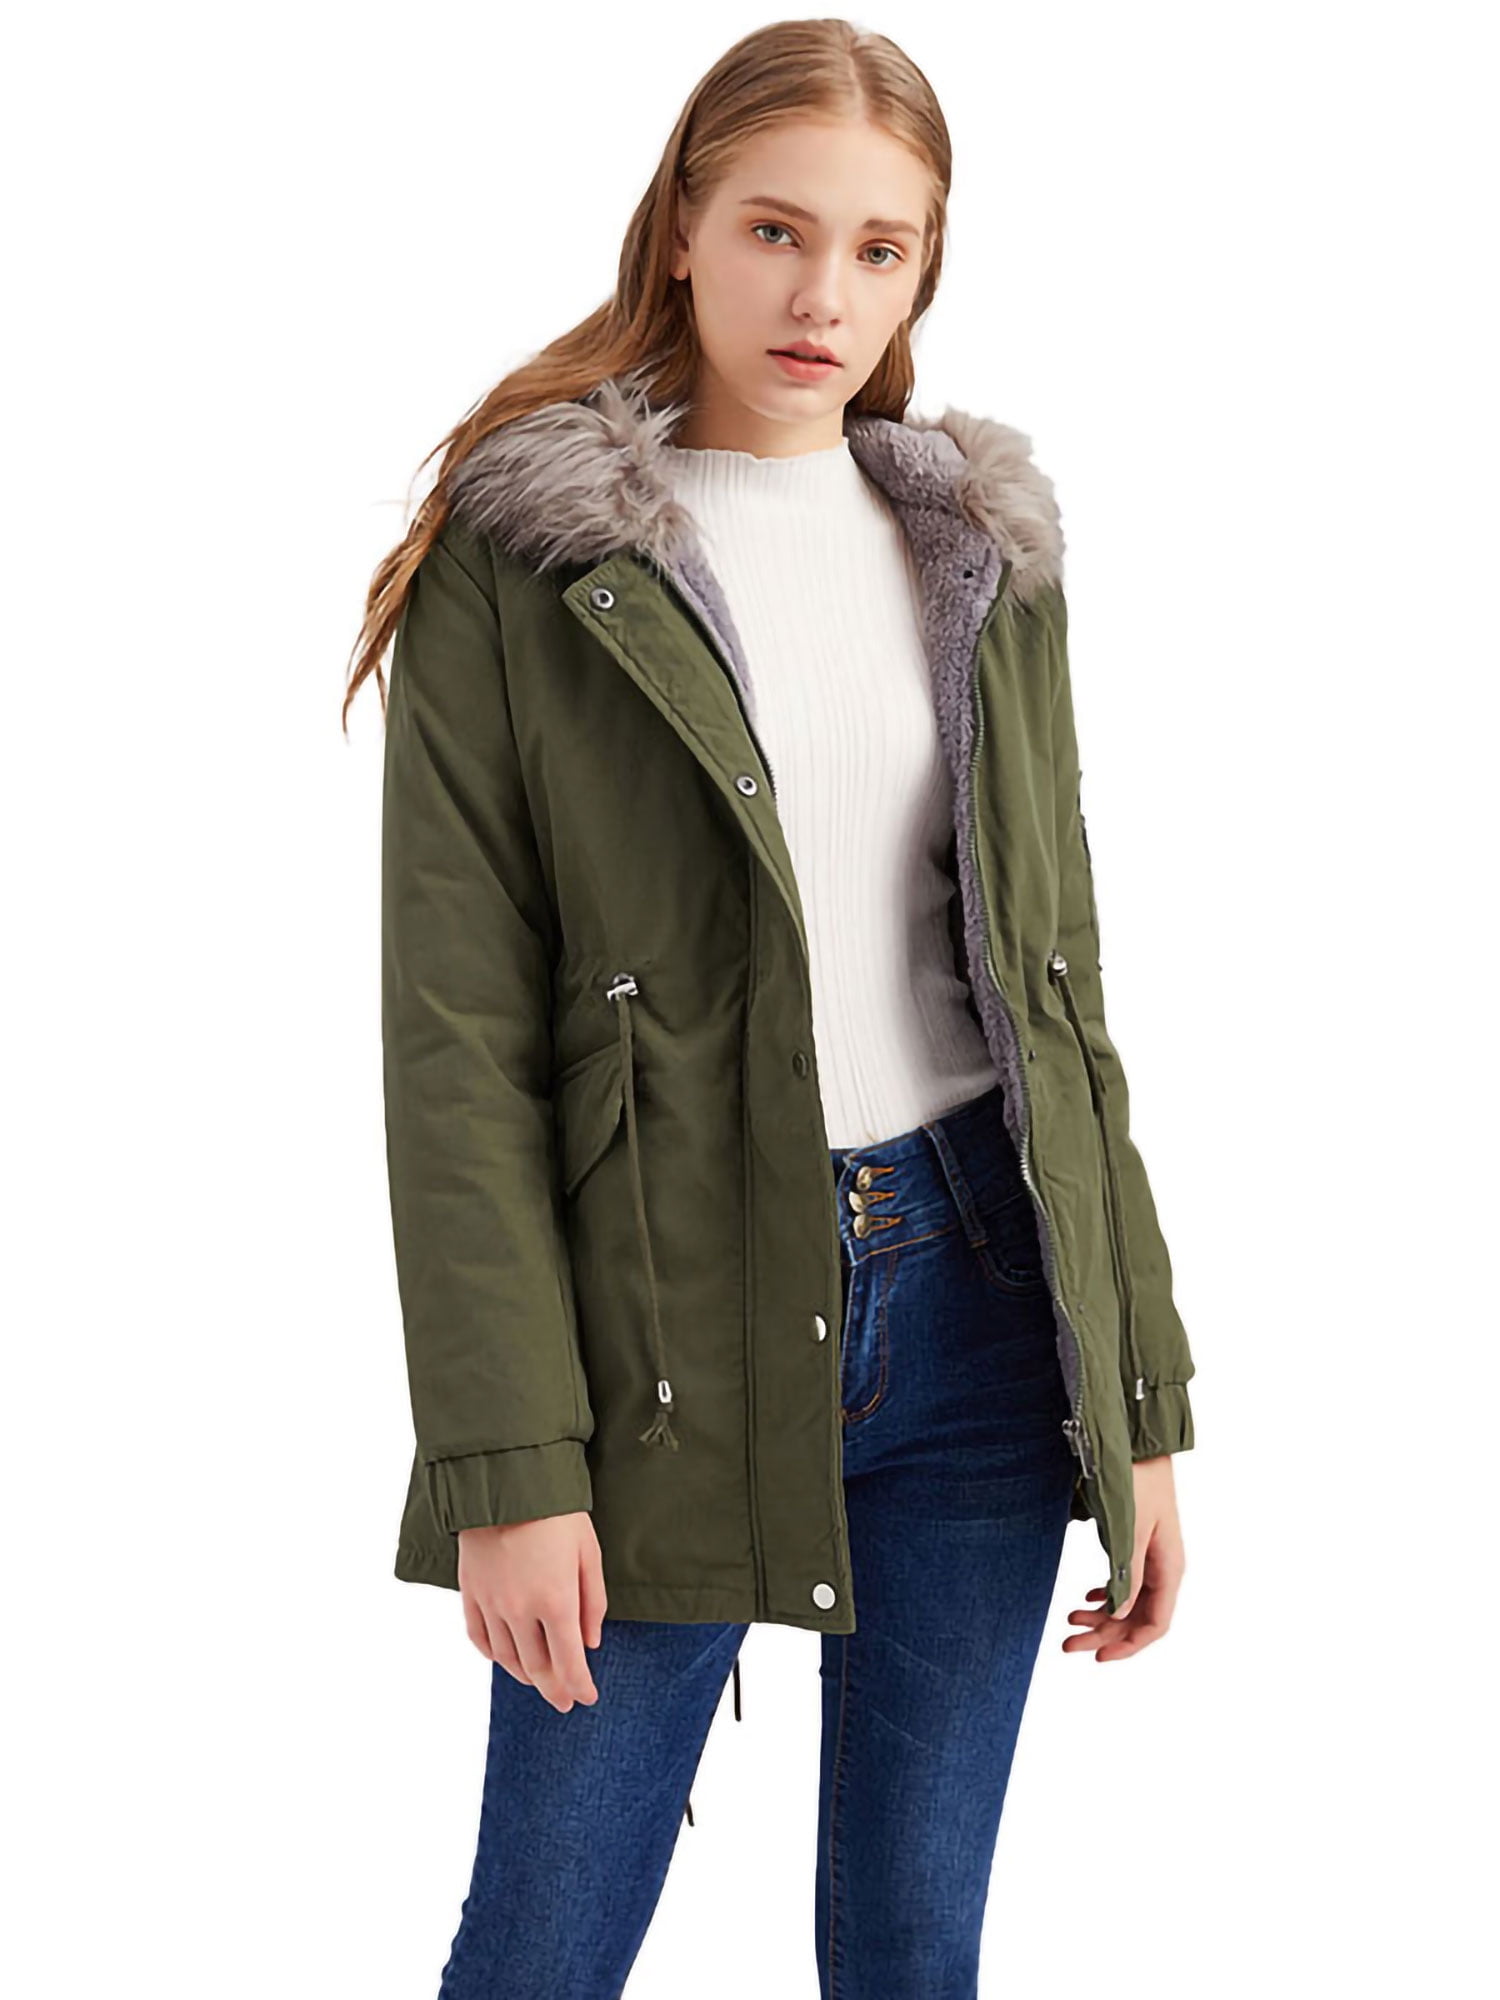 Women Winter Warm Hooded Coat Windproof Faux Fur Parka Jacket Trench Outwear